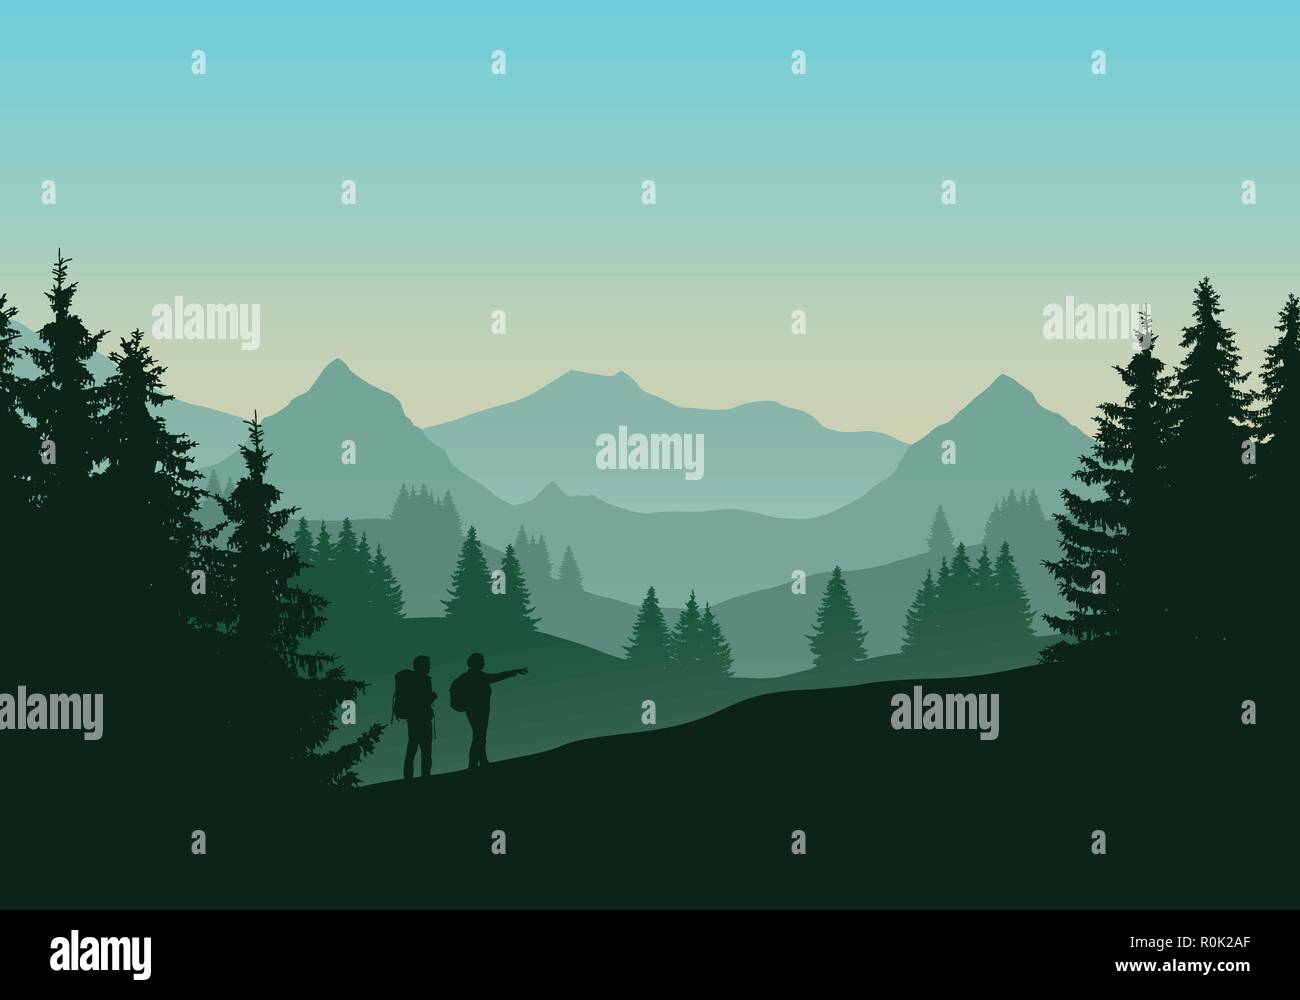 Vector Illustration einer grünen Landschaft mit Nadelwald mit Bäumen und zwei Touristen, Mann und Frau, mit Rucksäcken. Hügel und Berge mit gr Stock Vektor